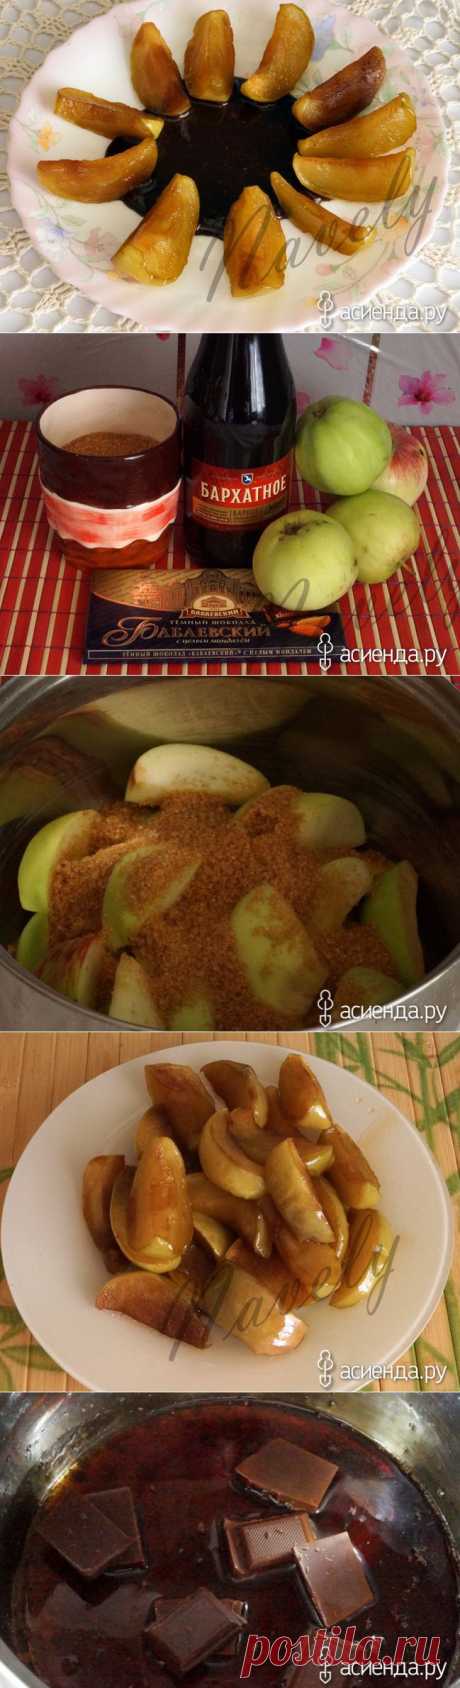 Пивные яблоки в шоколадном соусе: Группа Собираем урожай: хвастики, рецепты, заготовки